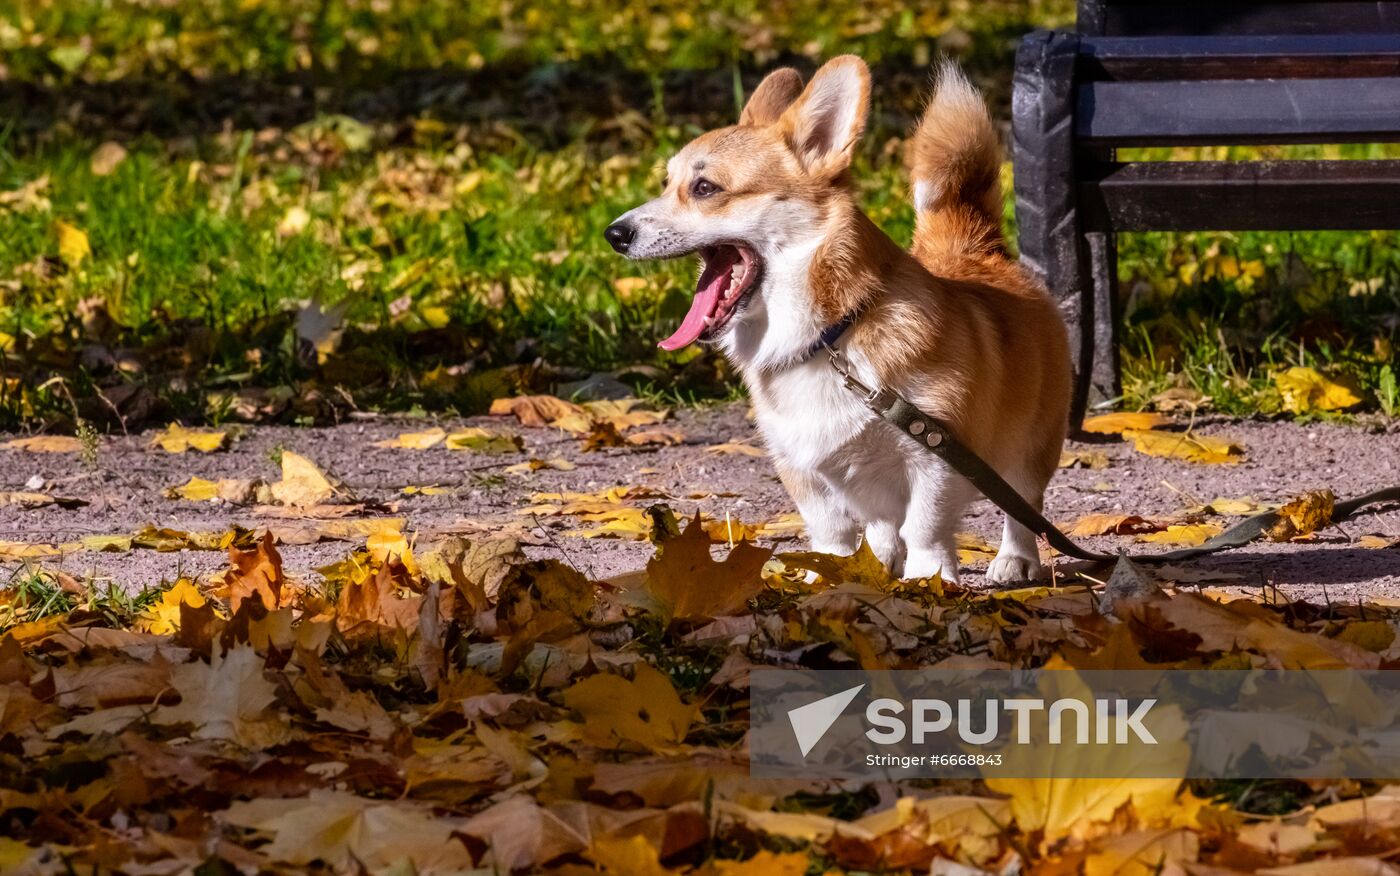 Russia Autumn